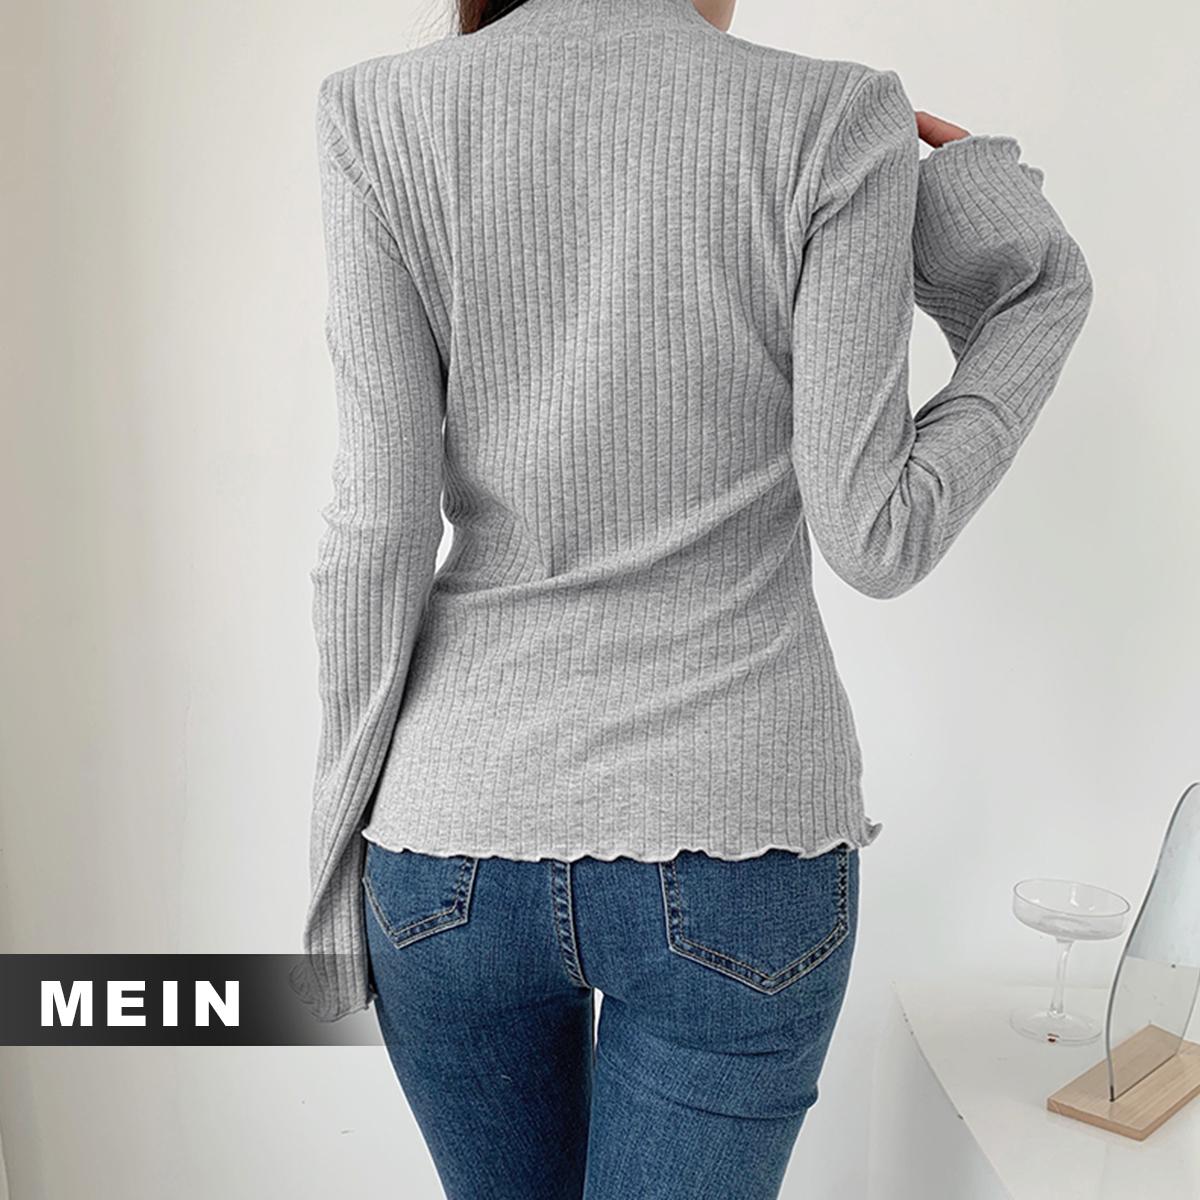 [MEIN] 32123 Long Sleeve Shirt Atasan Cewek Outfit Wanita Panjang Top Casual Baju